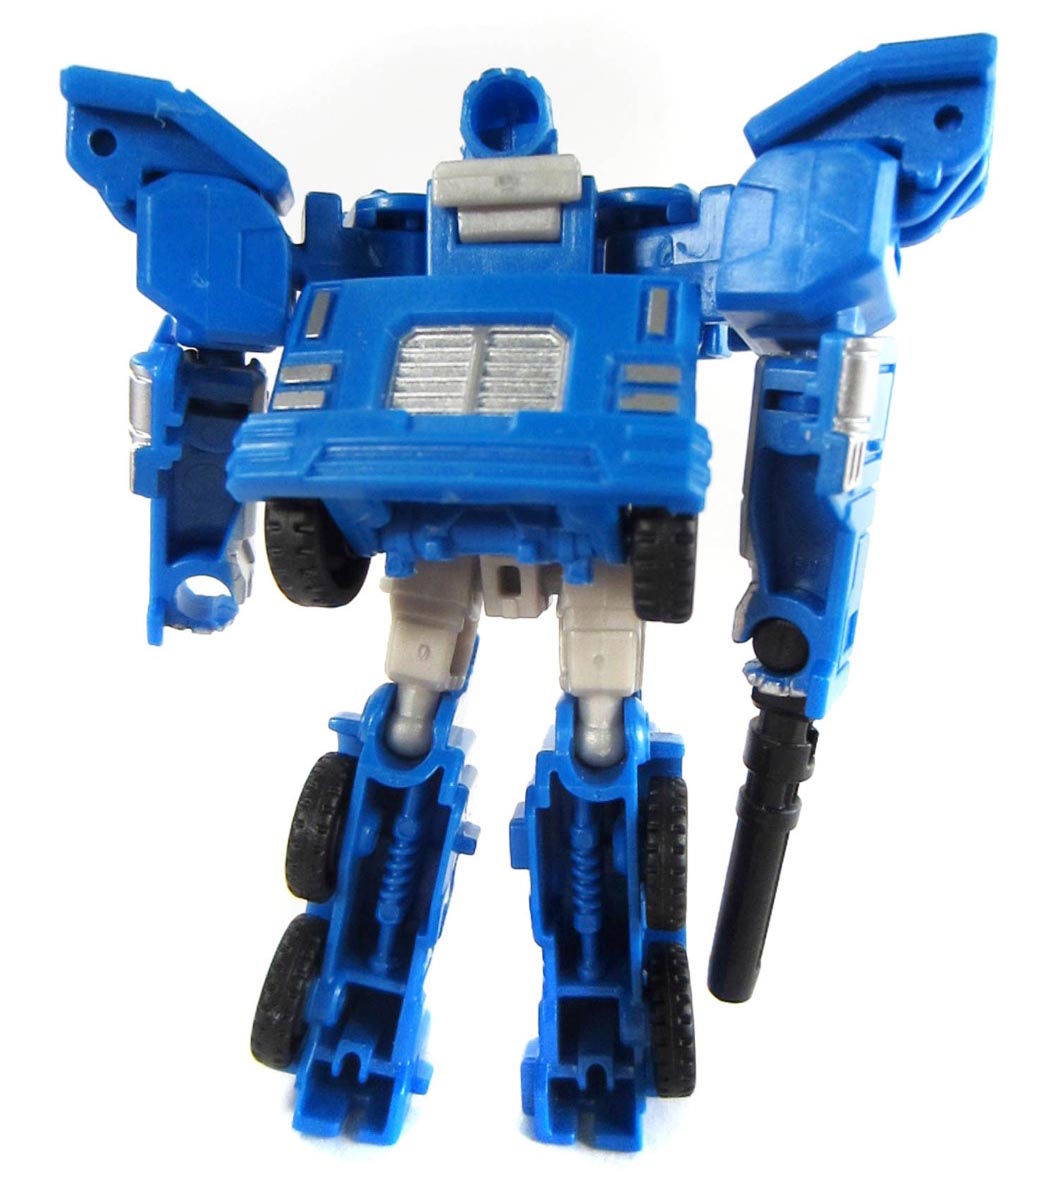 Đồ chơi Robot Transformers biến hình ô tô Autobot Pipes - Combiner Wars